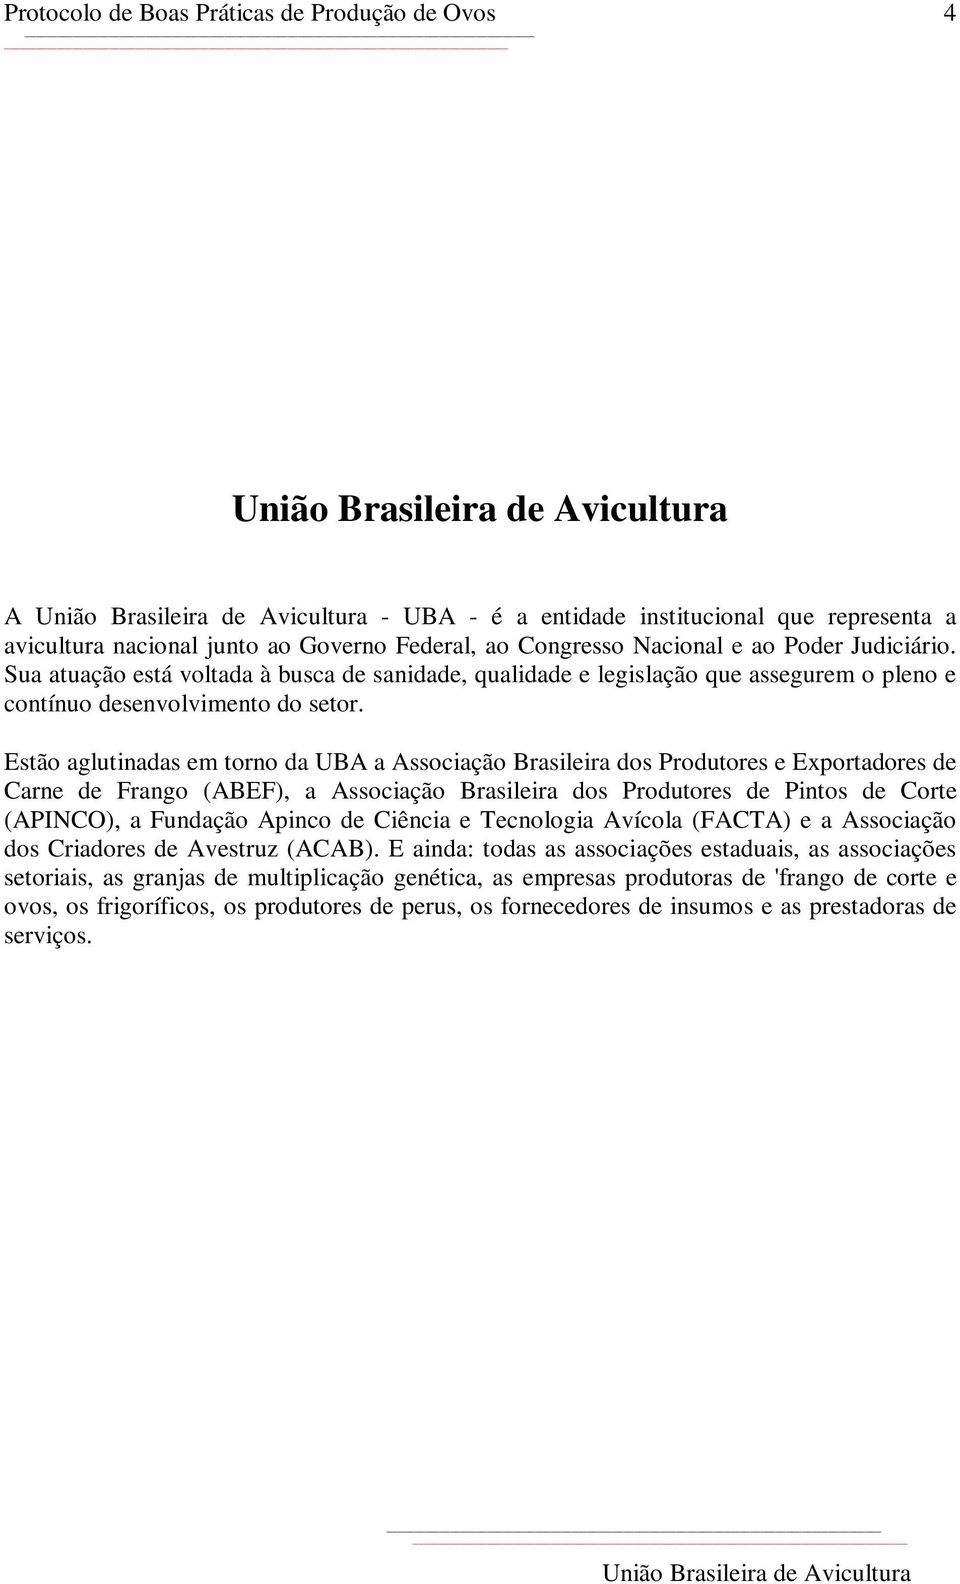 Estão aglutinadas em torno da UBA a Associação Brasileira dos Produtores e Exportadores de Carne de Frango (ABEF), a Associação Brasileira dos Produtores de Pintos de Corte (APINCO), a Fundação